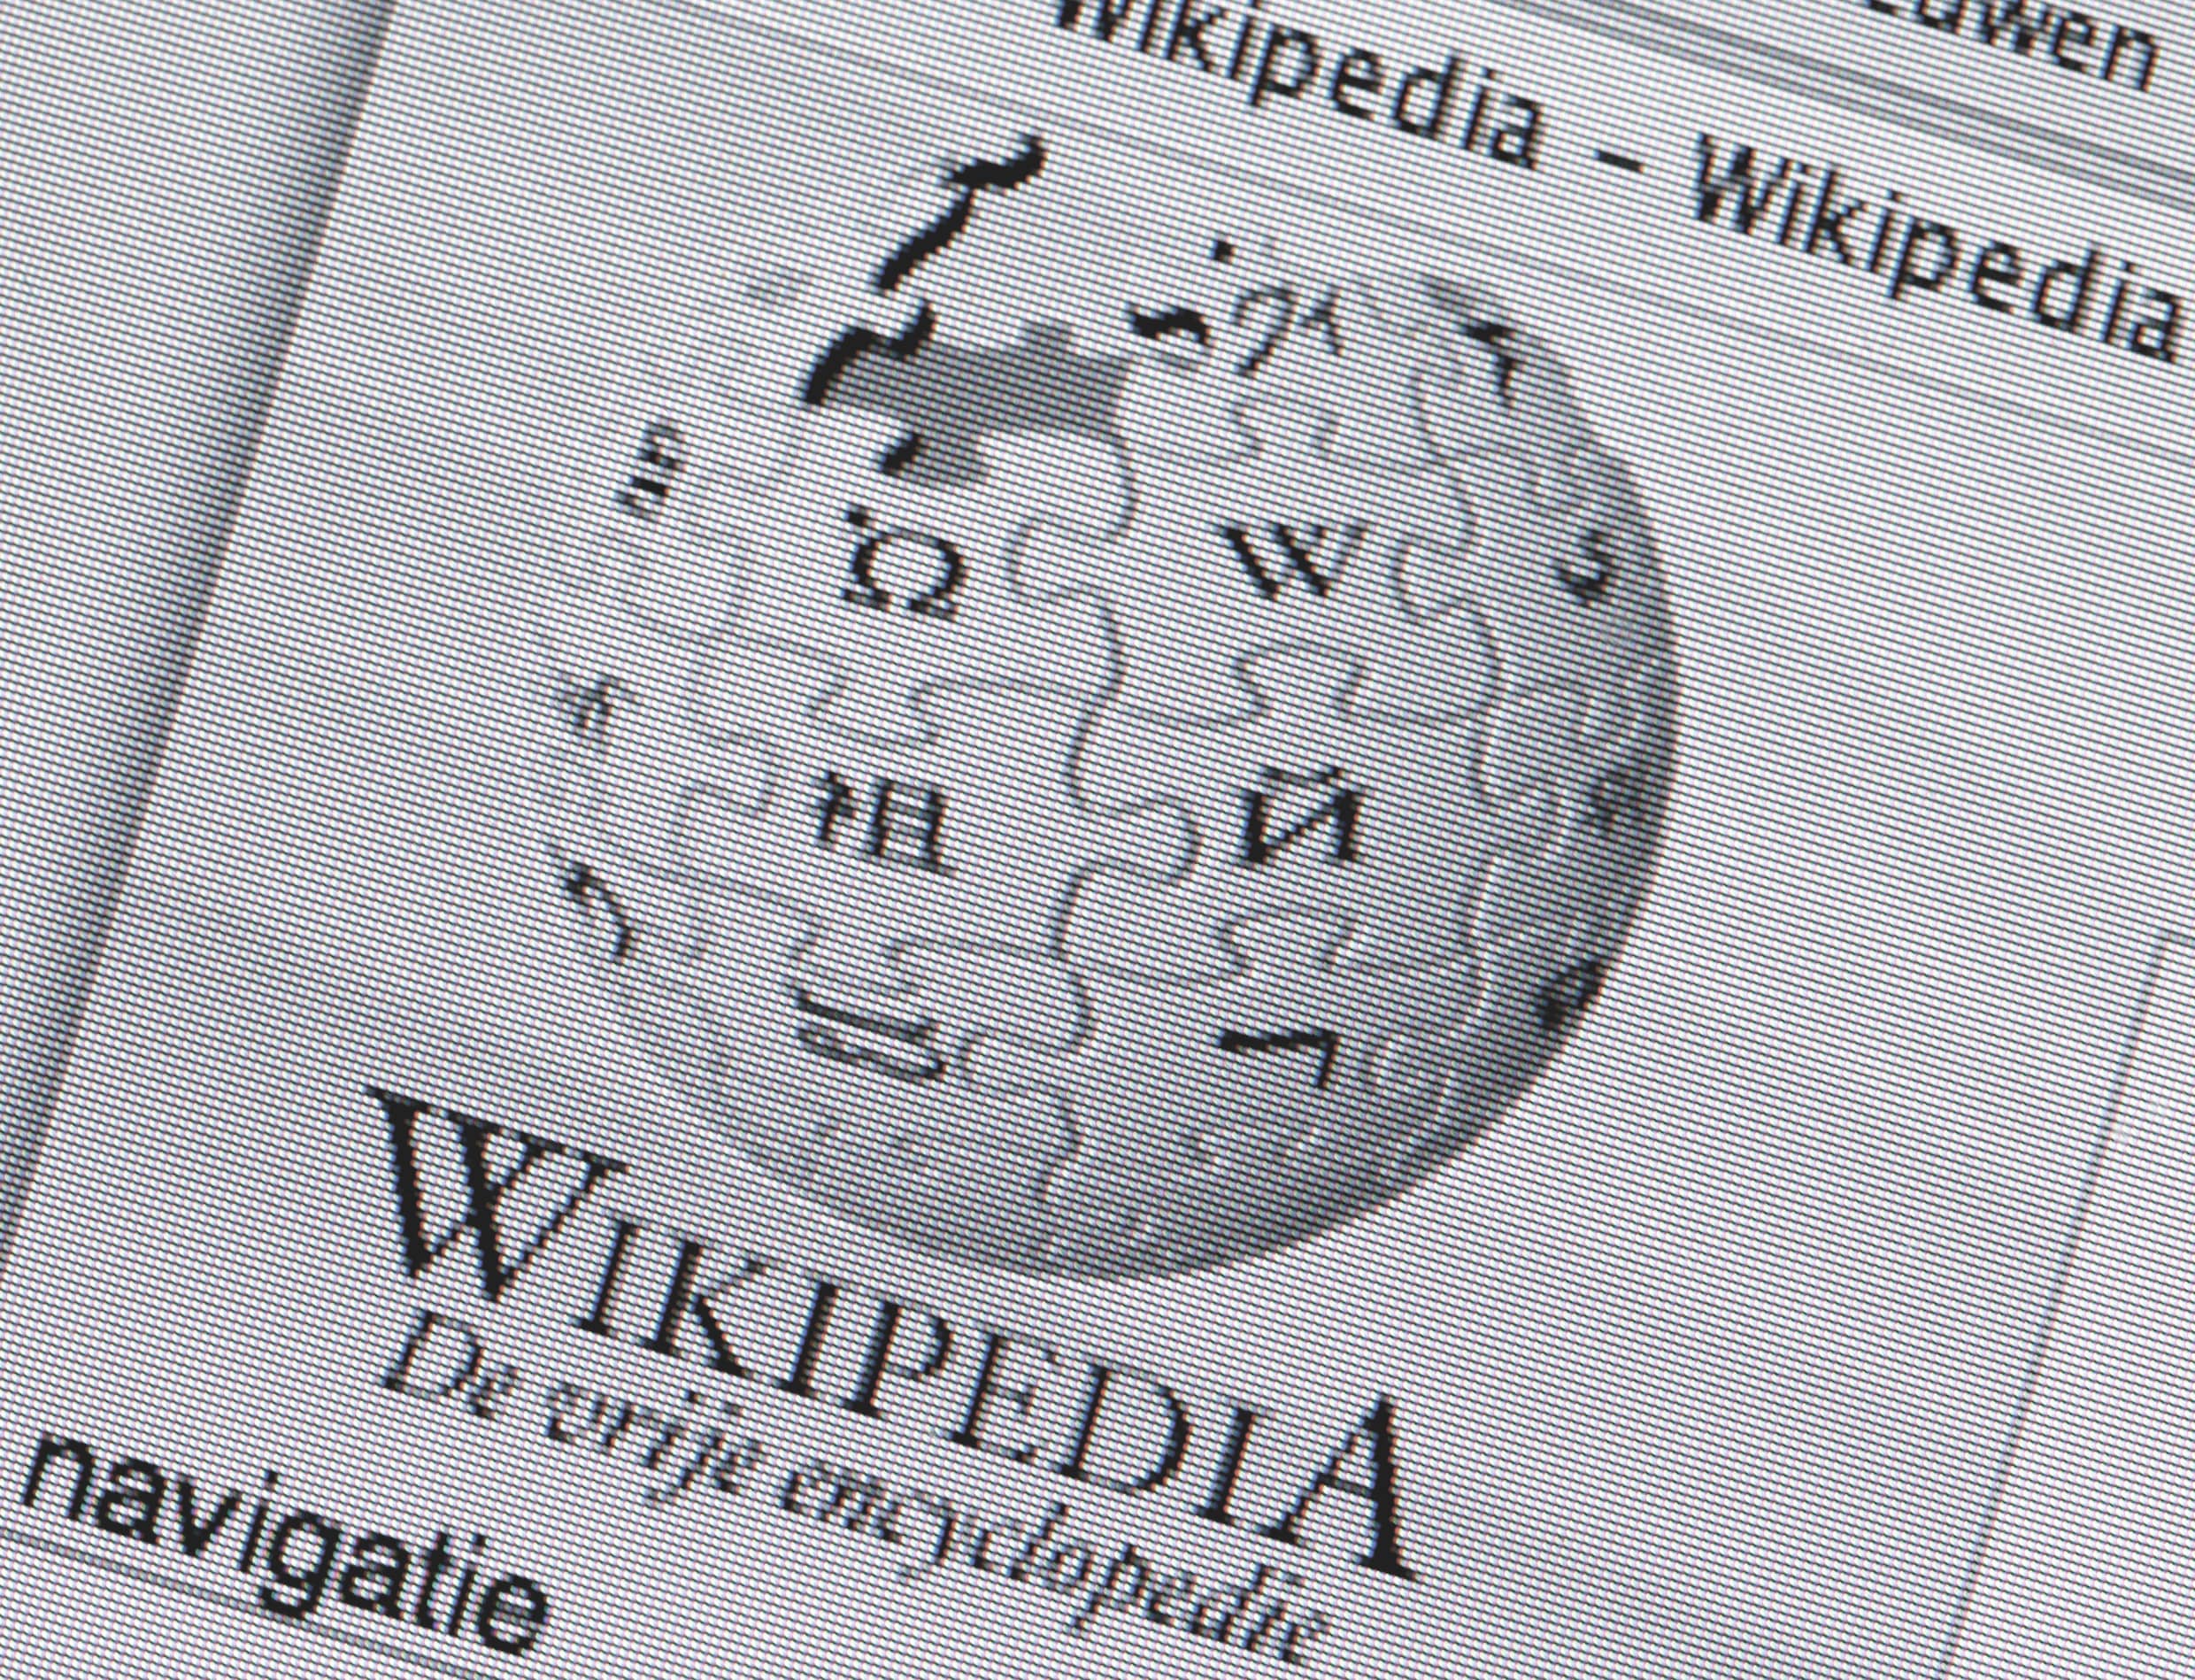 Wikipedia zet pagina over ‘boreaal’ van Baudet op slot vanwege “vandalisme”